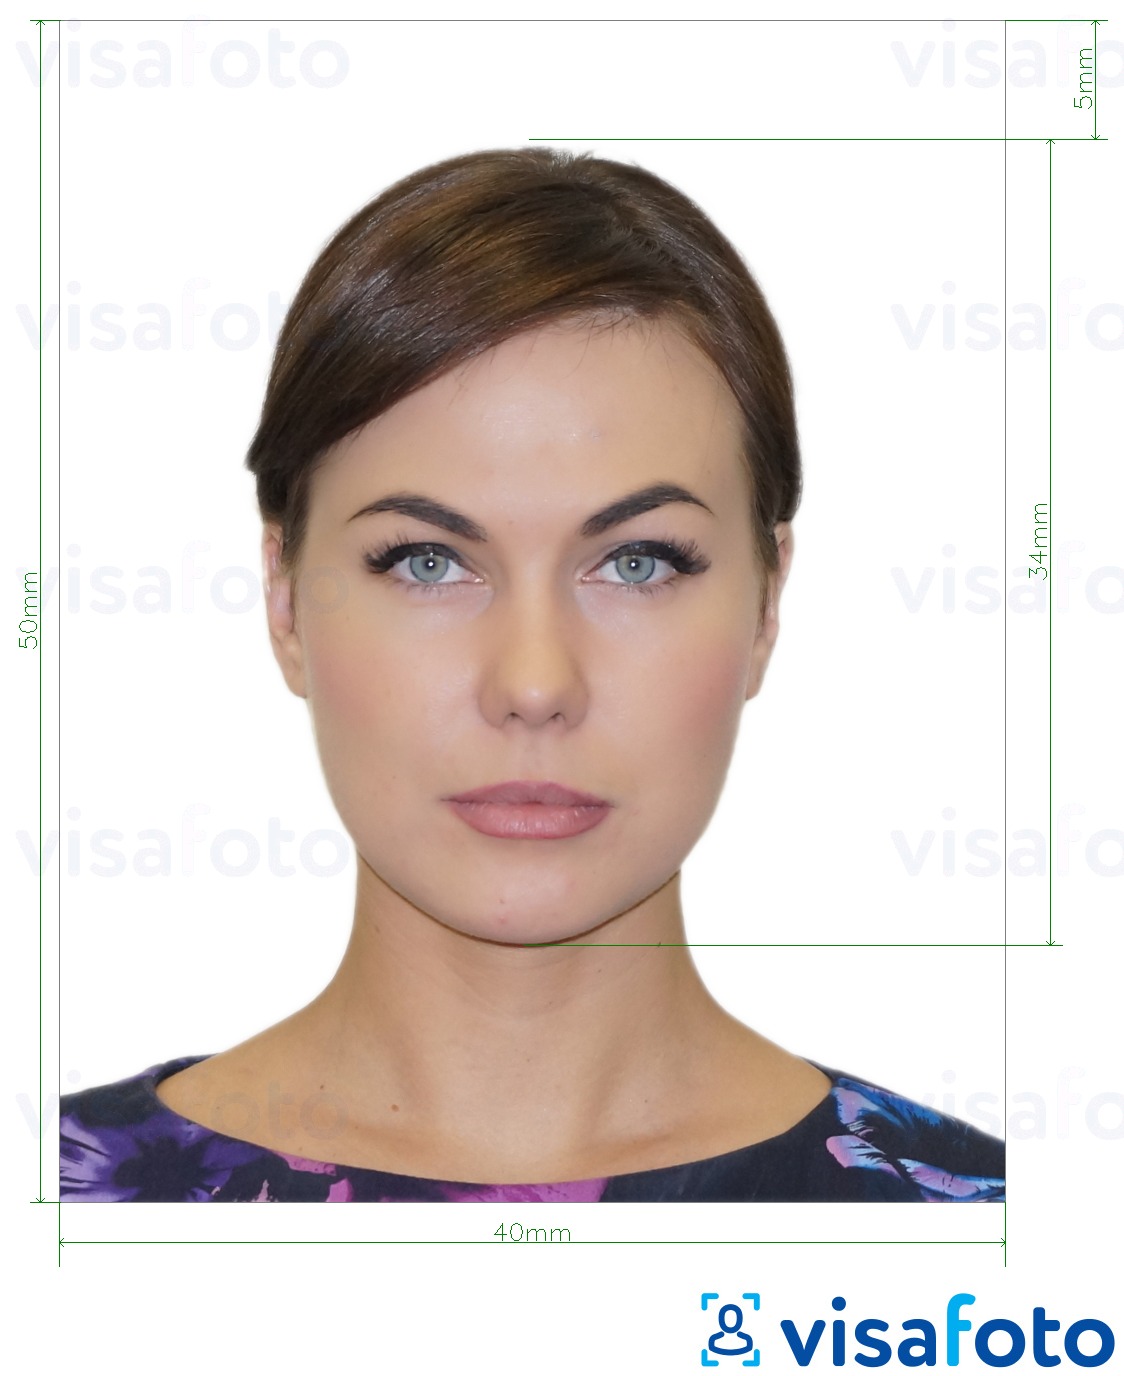 نمونه ی یک عکس برای پاسپورت قبرس 4x5 سانتی متر (40x50 میلی متر) با مشخصات دقیق